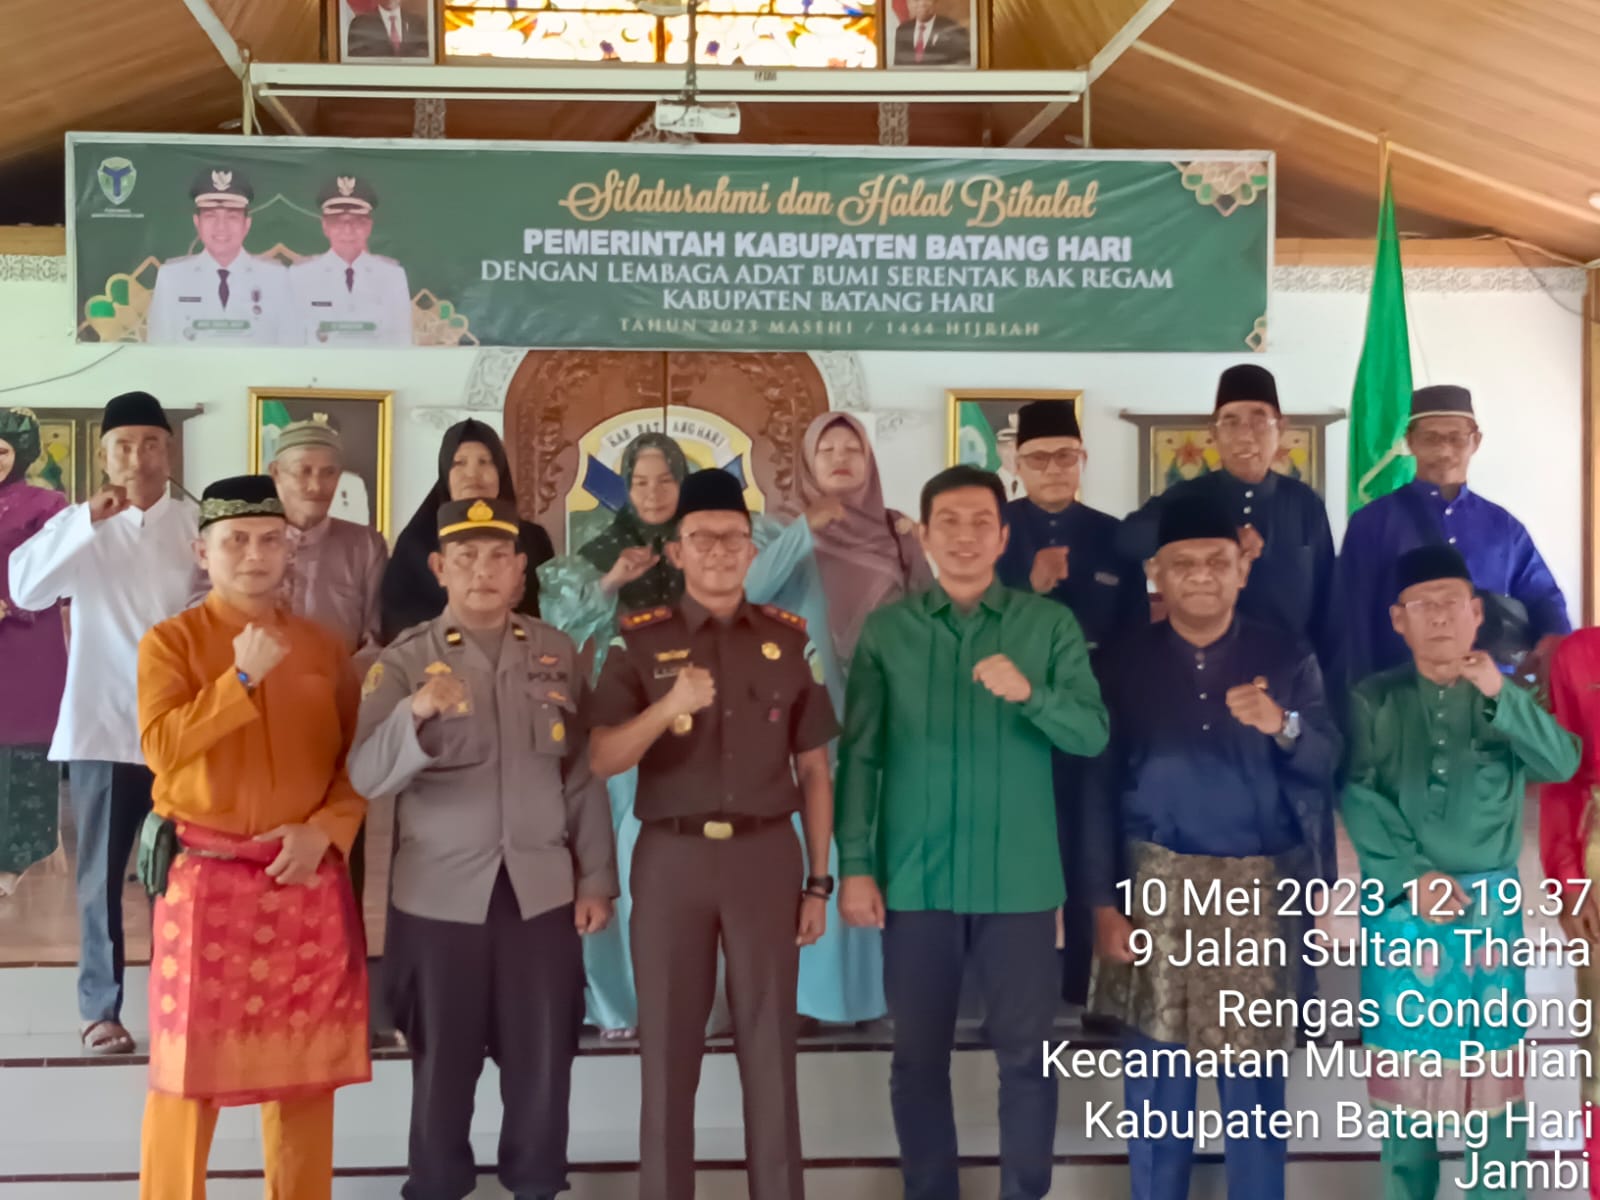 Silaturahmi Pemkab Batanghari dengan lembaga Adat Serentak bak Ragam Kabupaten Batanghari